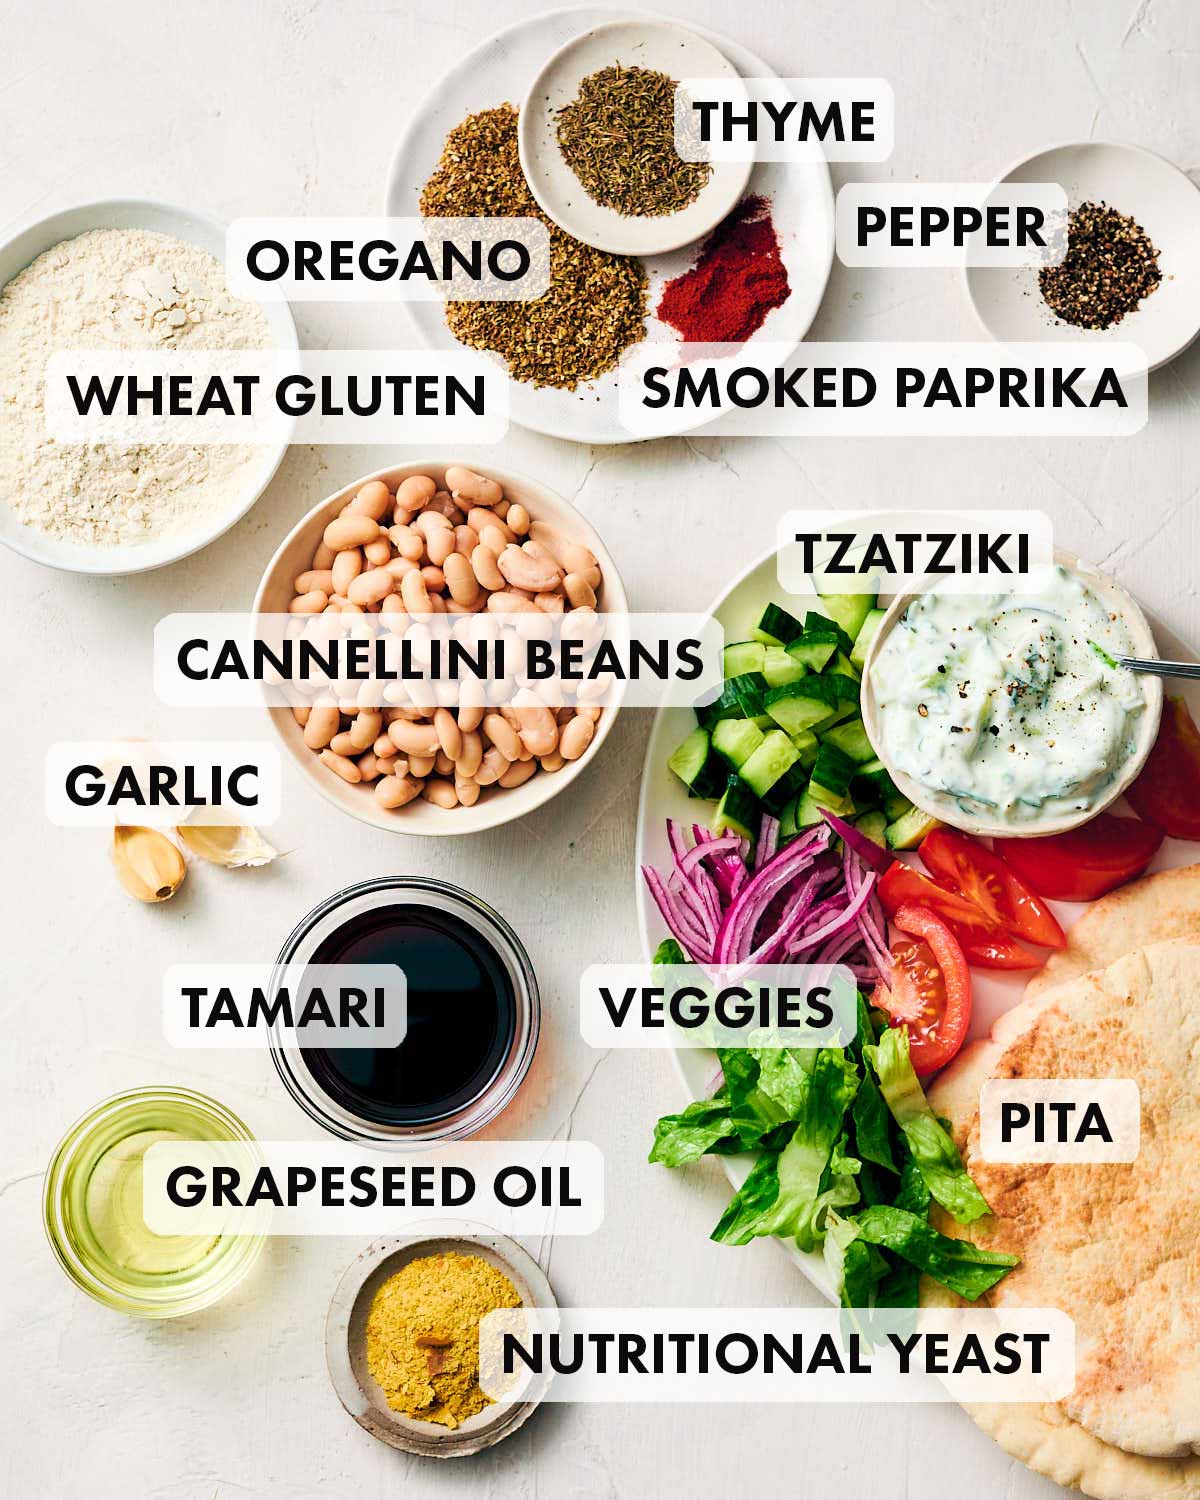 Ingredients to make vegan gyros with seitan, including wheat gluten, tzatzii, and pita.